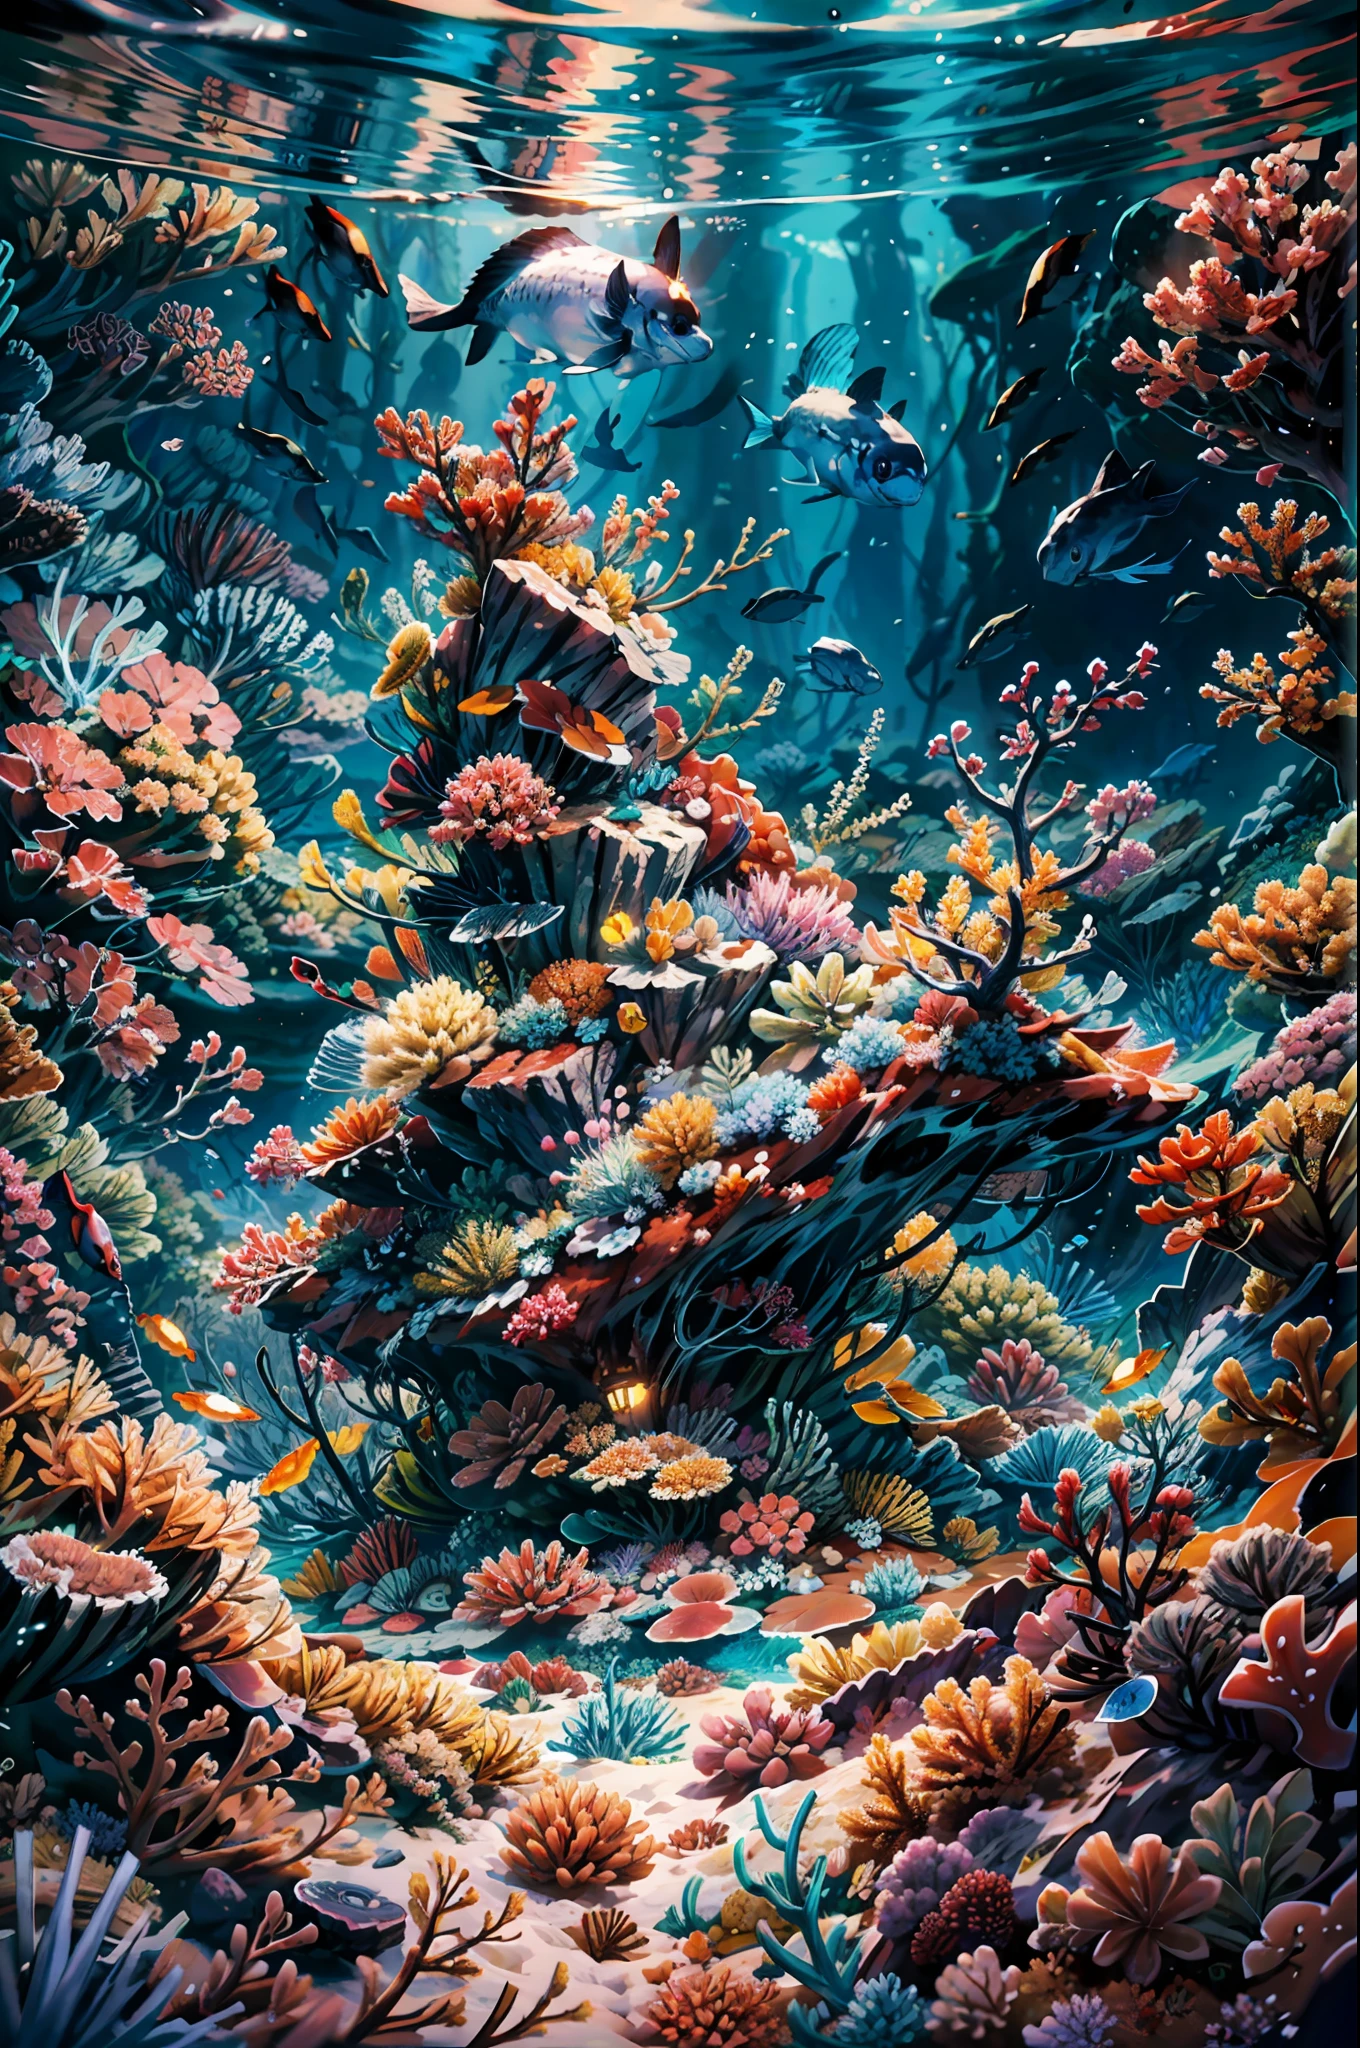 深海背景, 海底場景, 水下燈, 水下城堡, 顏色ful small fishes, 顏色ful coral reef grow on a vast sand ground under the water, 幻想 sea, 動態角度,萬物之下的沙子和岩石 BREAK,詳細的,實際的,4k 高度詳細的數位藝術,辛烷渲染, 生物發光, BREAK 8K 解析度概念藝術, 現實主義,由Mappa工作室設計,傑作,最好的品質,官方藝術,插圖,清晰的線條,(涼爽的_顏色),完美的構圖,荒謬的, 幻想,專注的,三分法